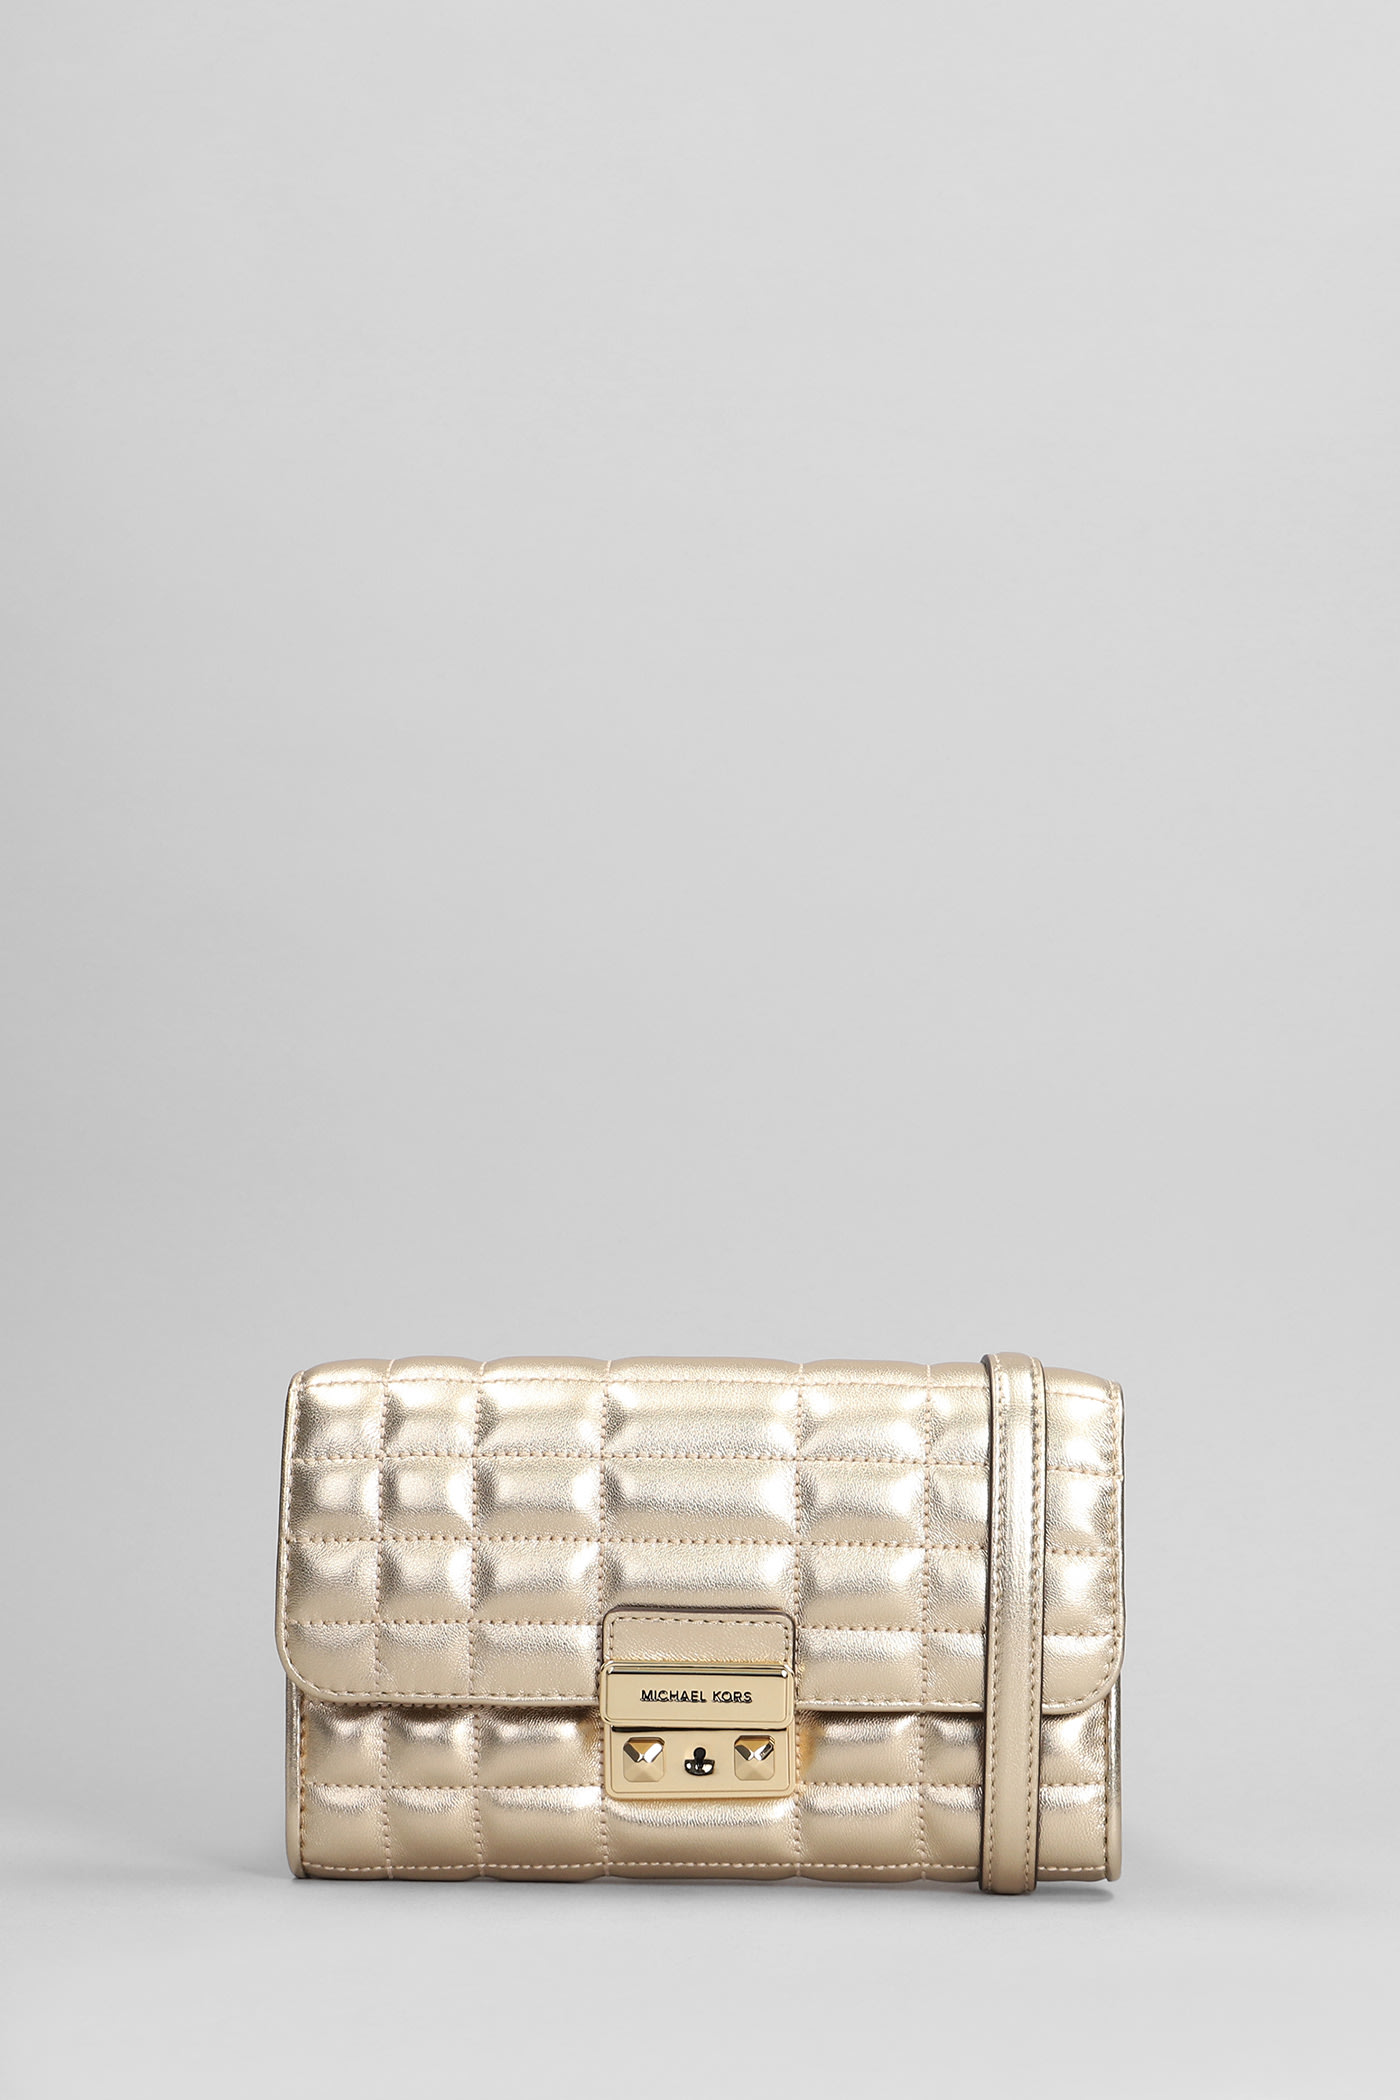 Michael Kors Tribeca Shoulder Bag In Gold Leather